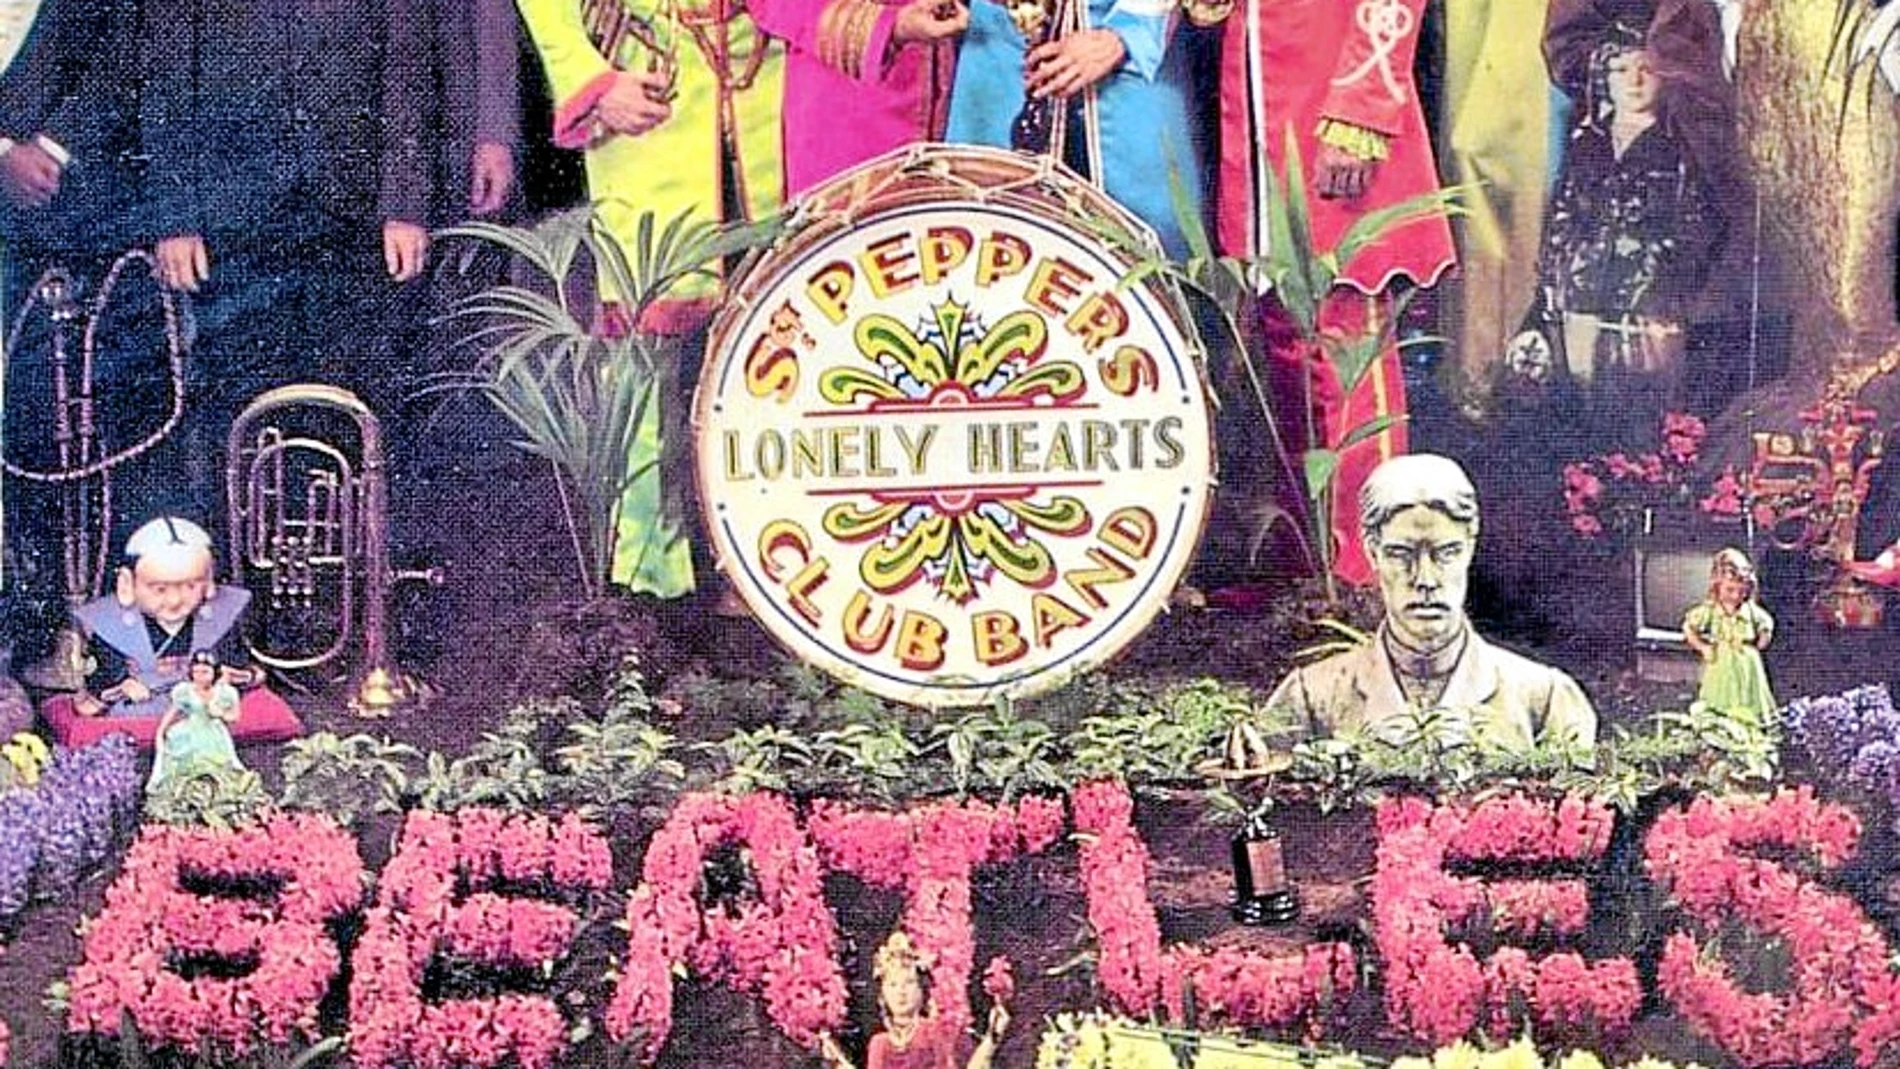 «Sgt. Pepper's...», uno de los grandes discos de los Beatles, que acaba de ser remasterizado